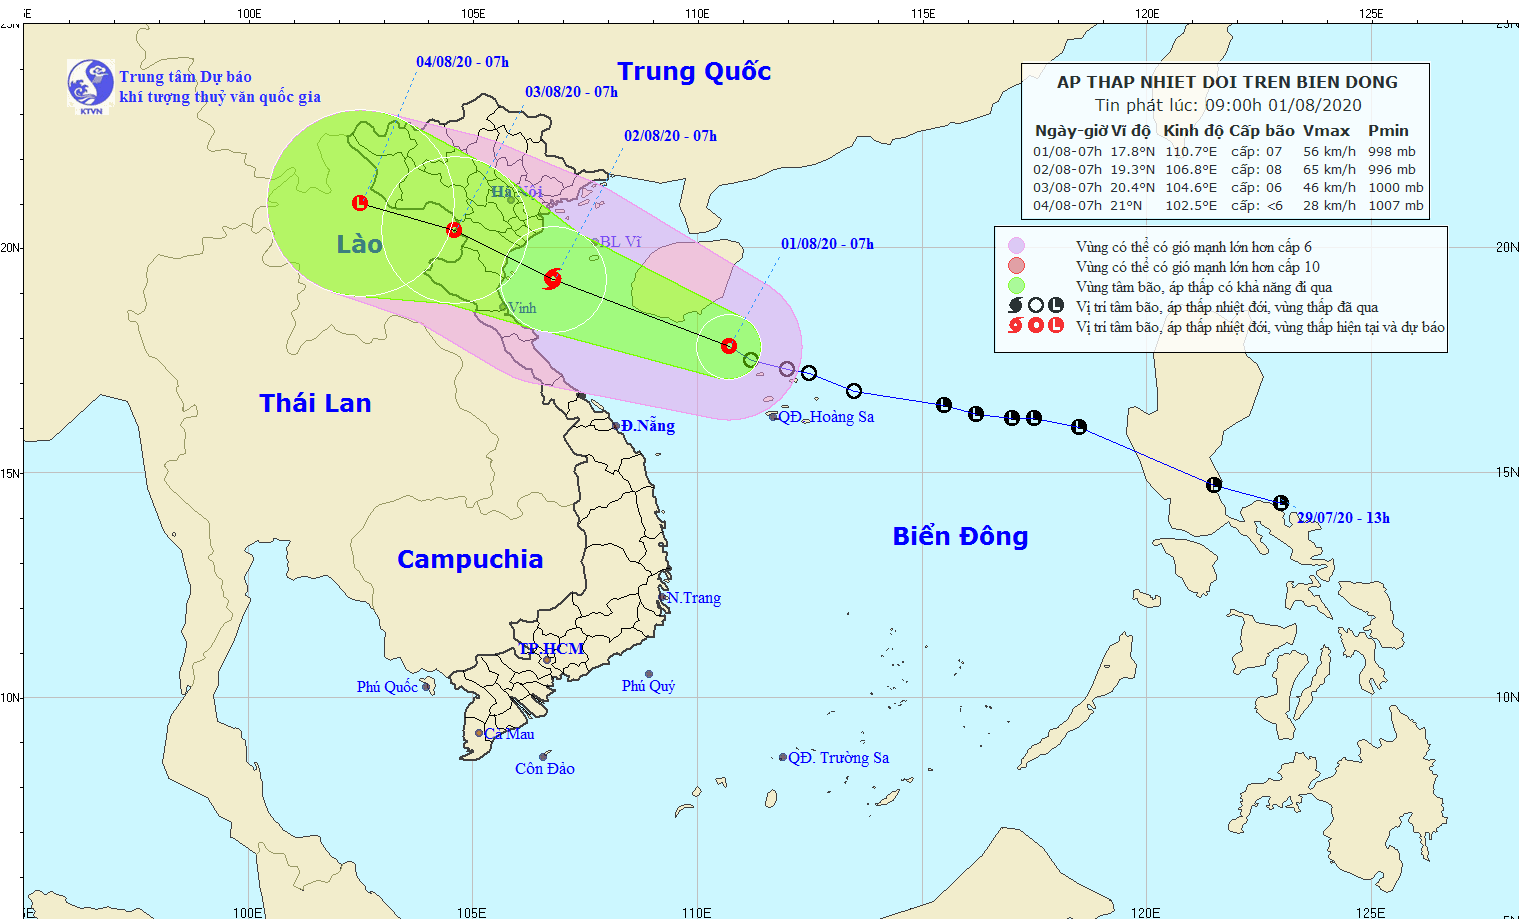 Áp thấp nhiệt đới gây gió giật và lốc xoáy ảnh hưởng trên khu vực giữa và Nam Biển Đông